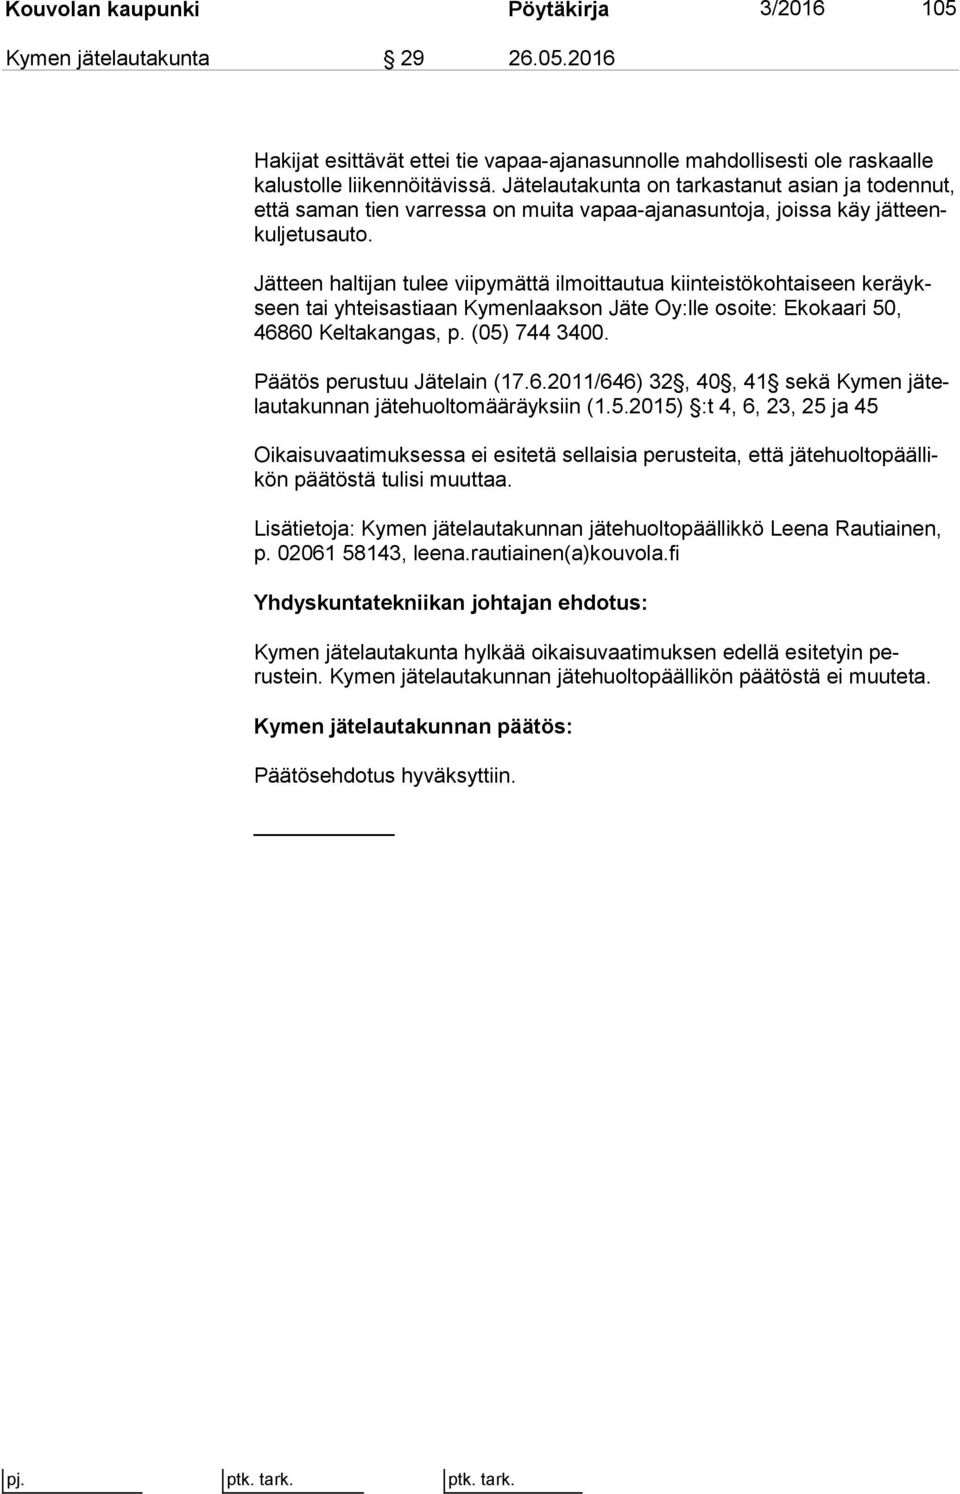 Jätteen haltijan tulee viipymättä ilmoittautua kiinteistökohtaiseen ke räykseen tai yhteisastiaan Kymenlaakson Jäte Oy:lle osoite: Ekokaari 50, 46860 Keltakangas, p. (05) 744 3400.